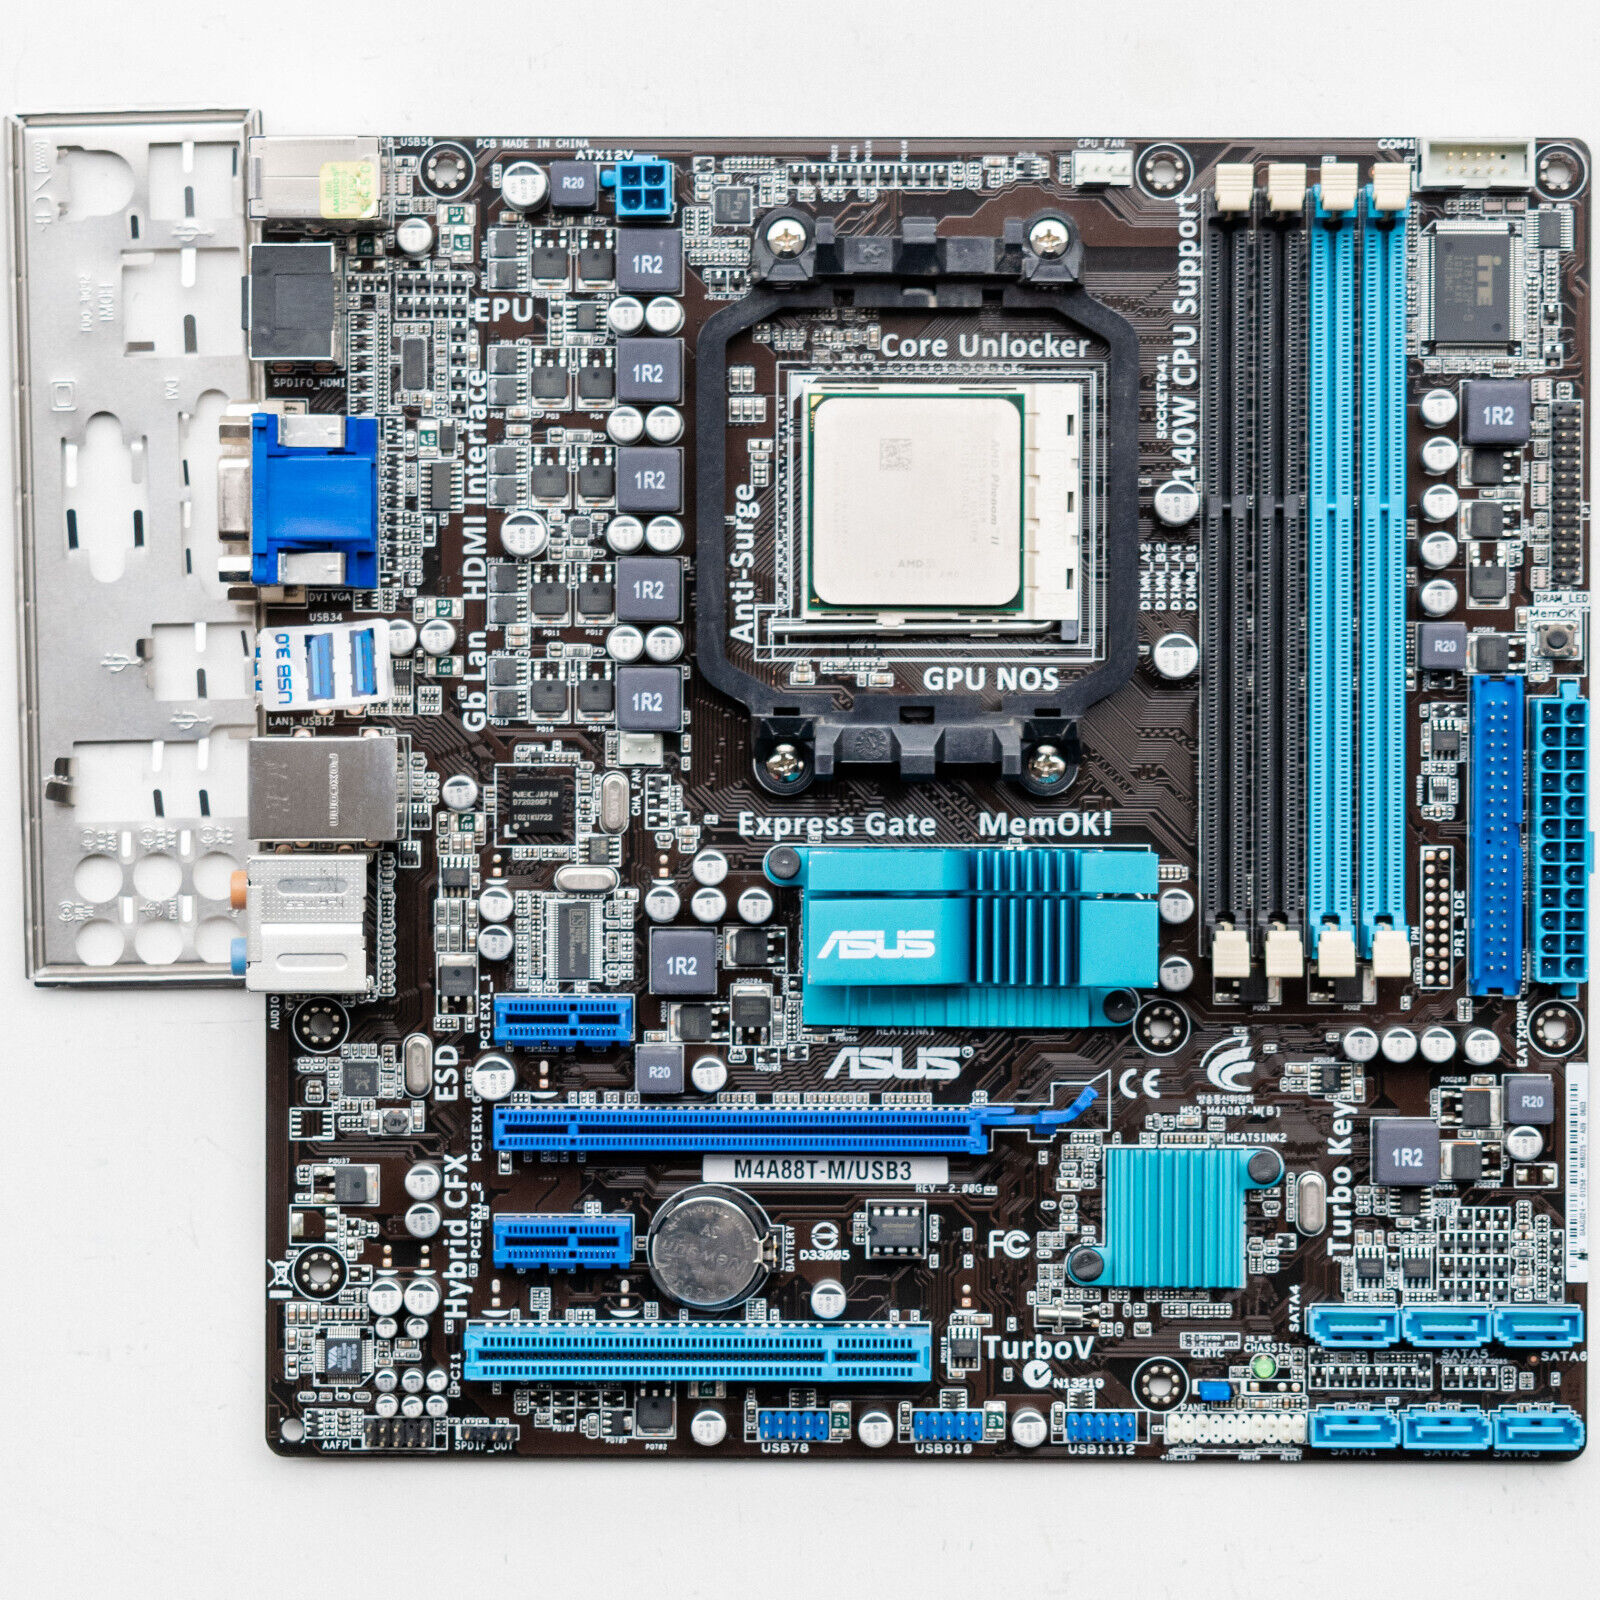 Asus M4A88T-M/USB3 AM3 Motherboard microATX USB 3.0 AMD Core Unlocking Phenom II